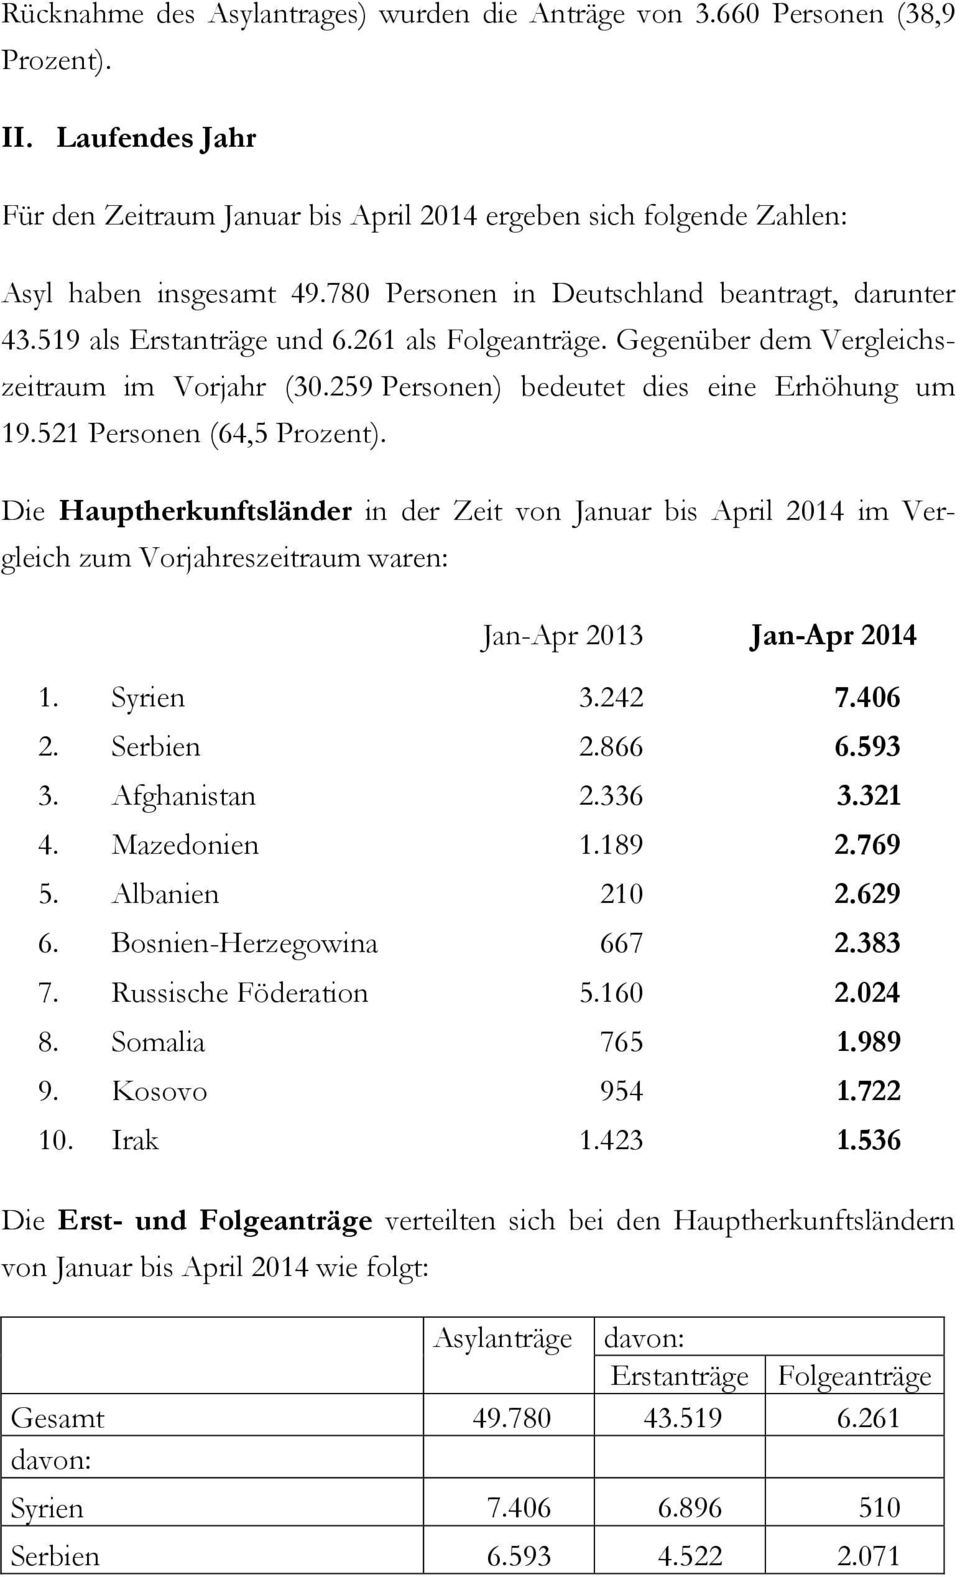 521 Personen (64,5 Prozent). Die Hauptherkunftsländer in der Zeit von Januar bis April 2014 im Vergleich zum Vorjahreszeitraum waren: Jan-Apr 2013 Jan-Apr 2014 1. Syrien 3.242 7.406 2. Serbien 2.